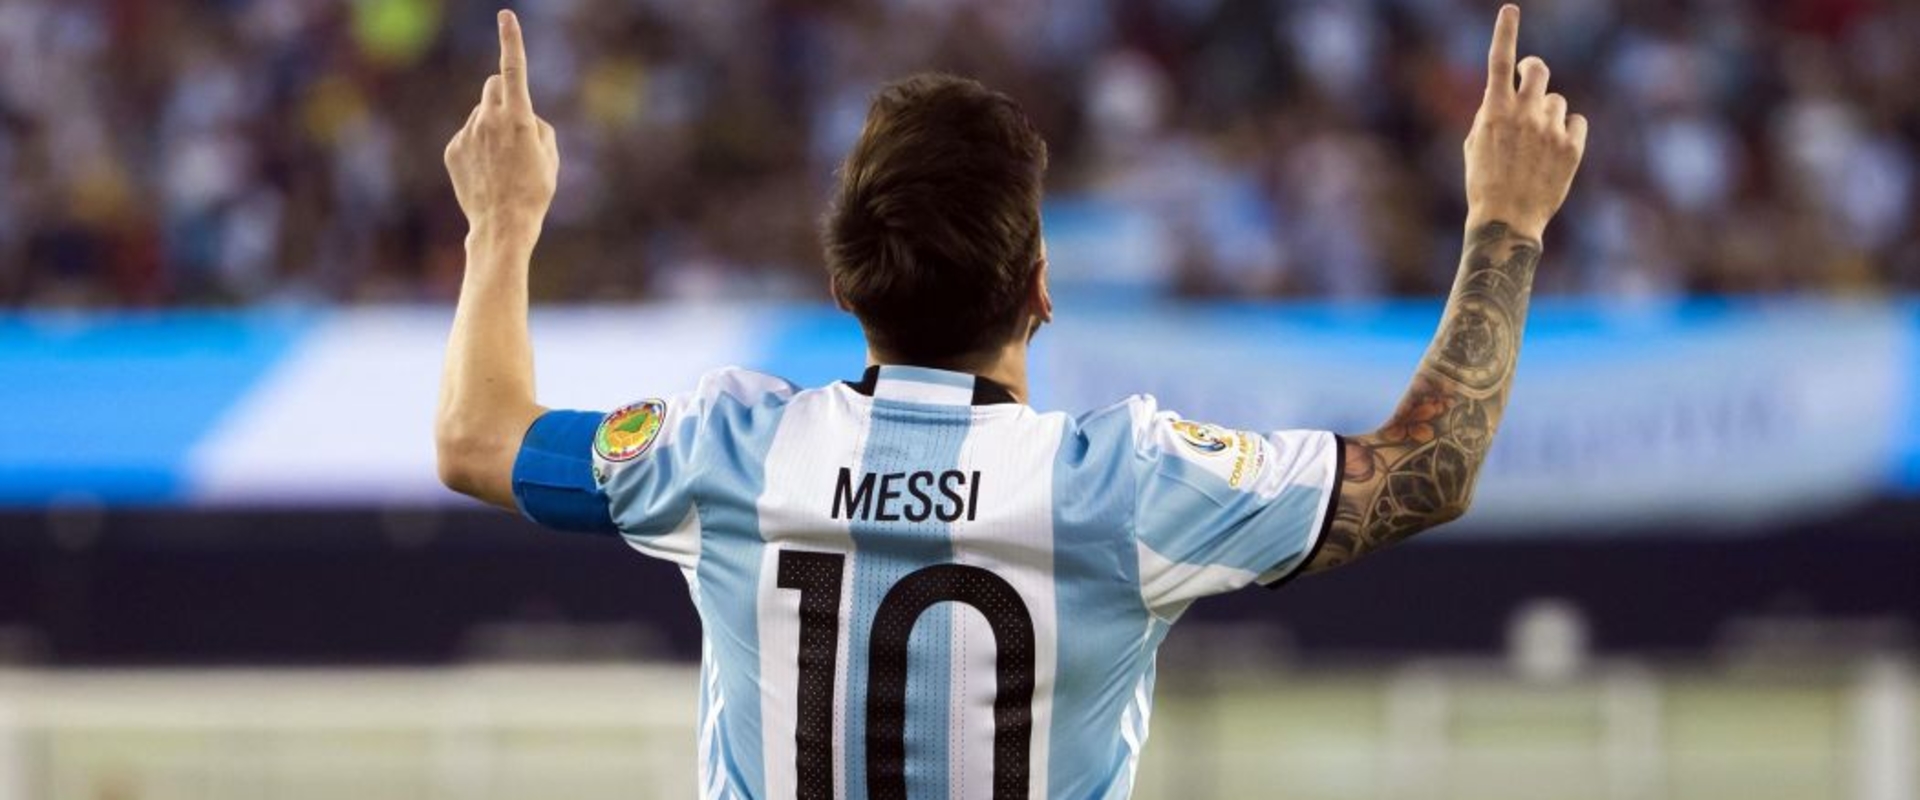 Messi vb kártyája jócskán üti a csapattársaiét!